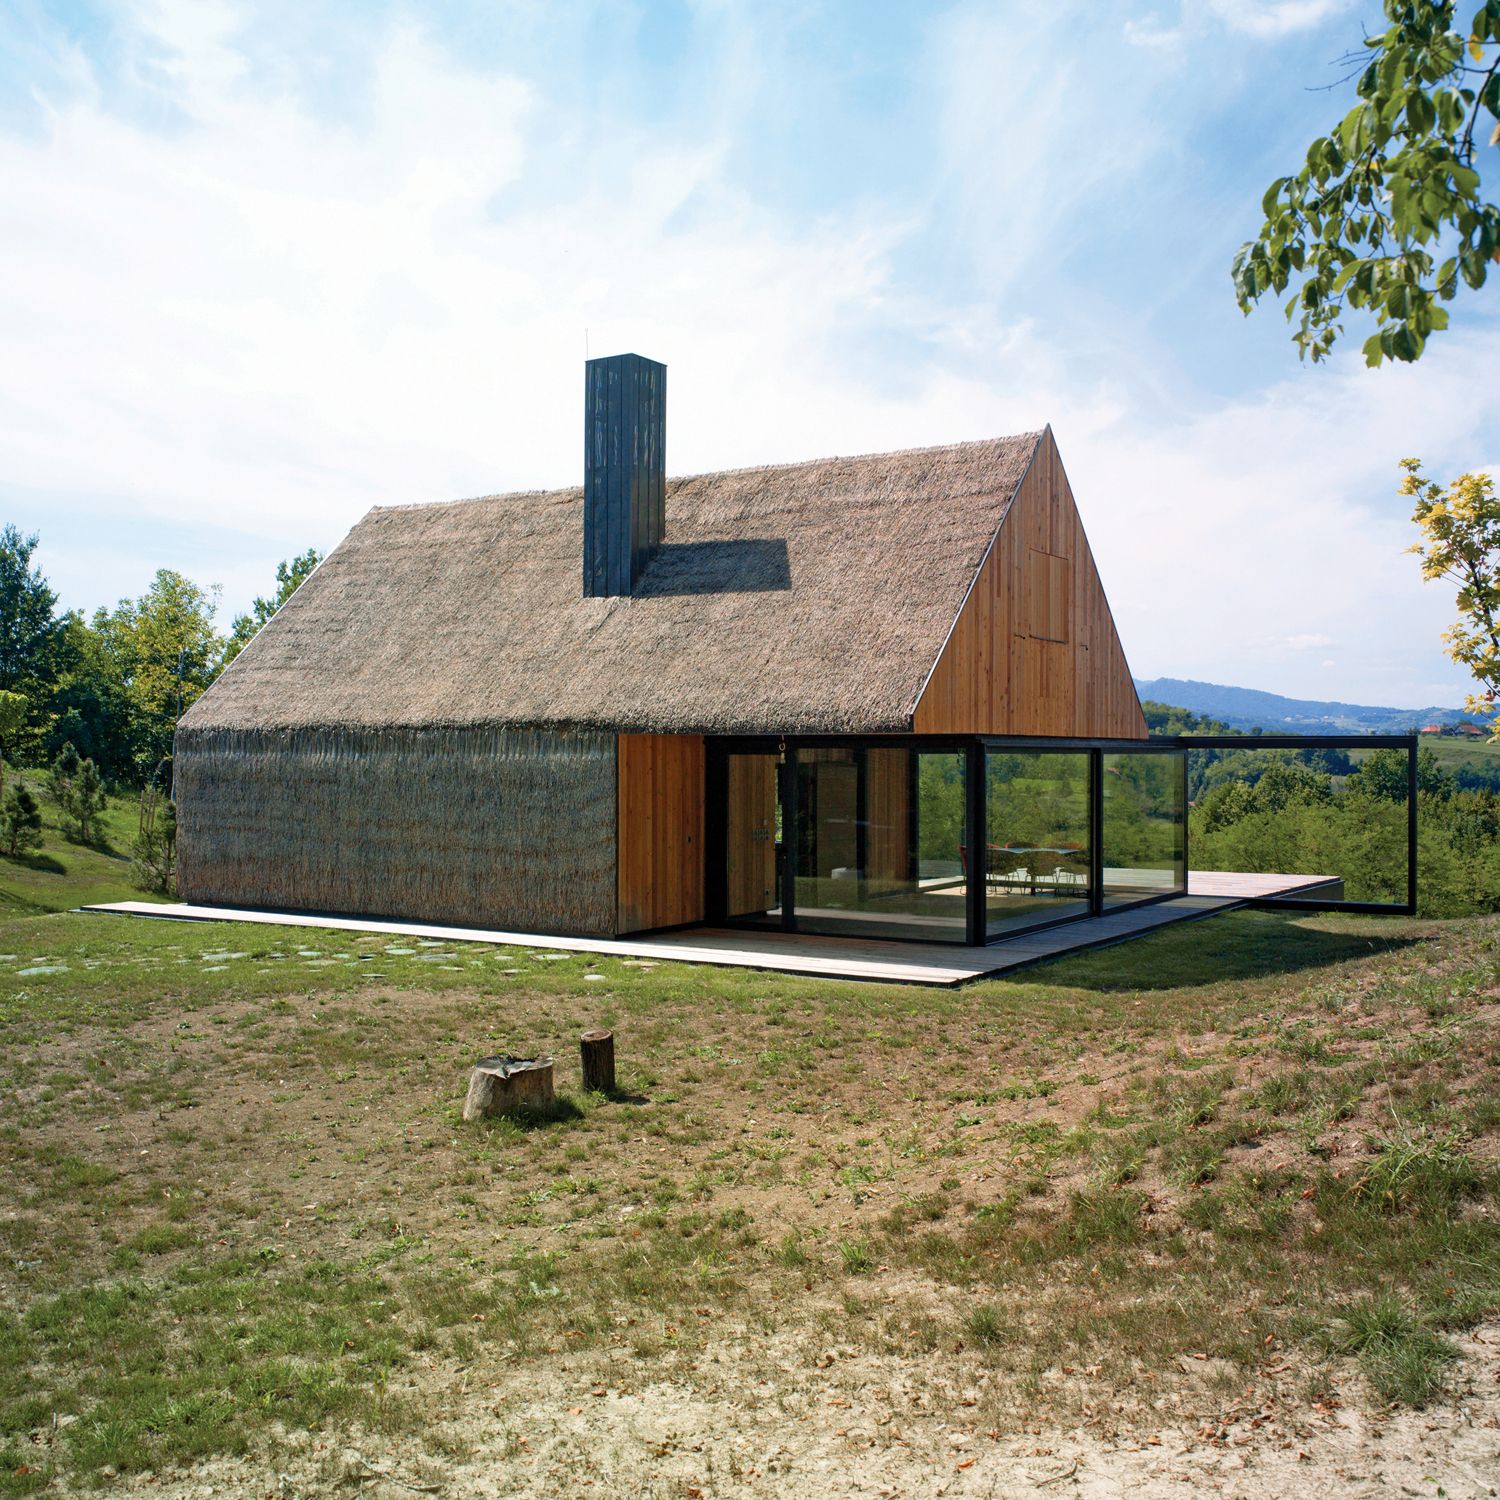 Odnowiona wiejska chata ze słomianym dachem